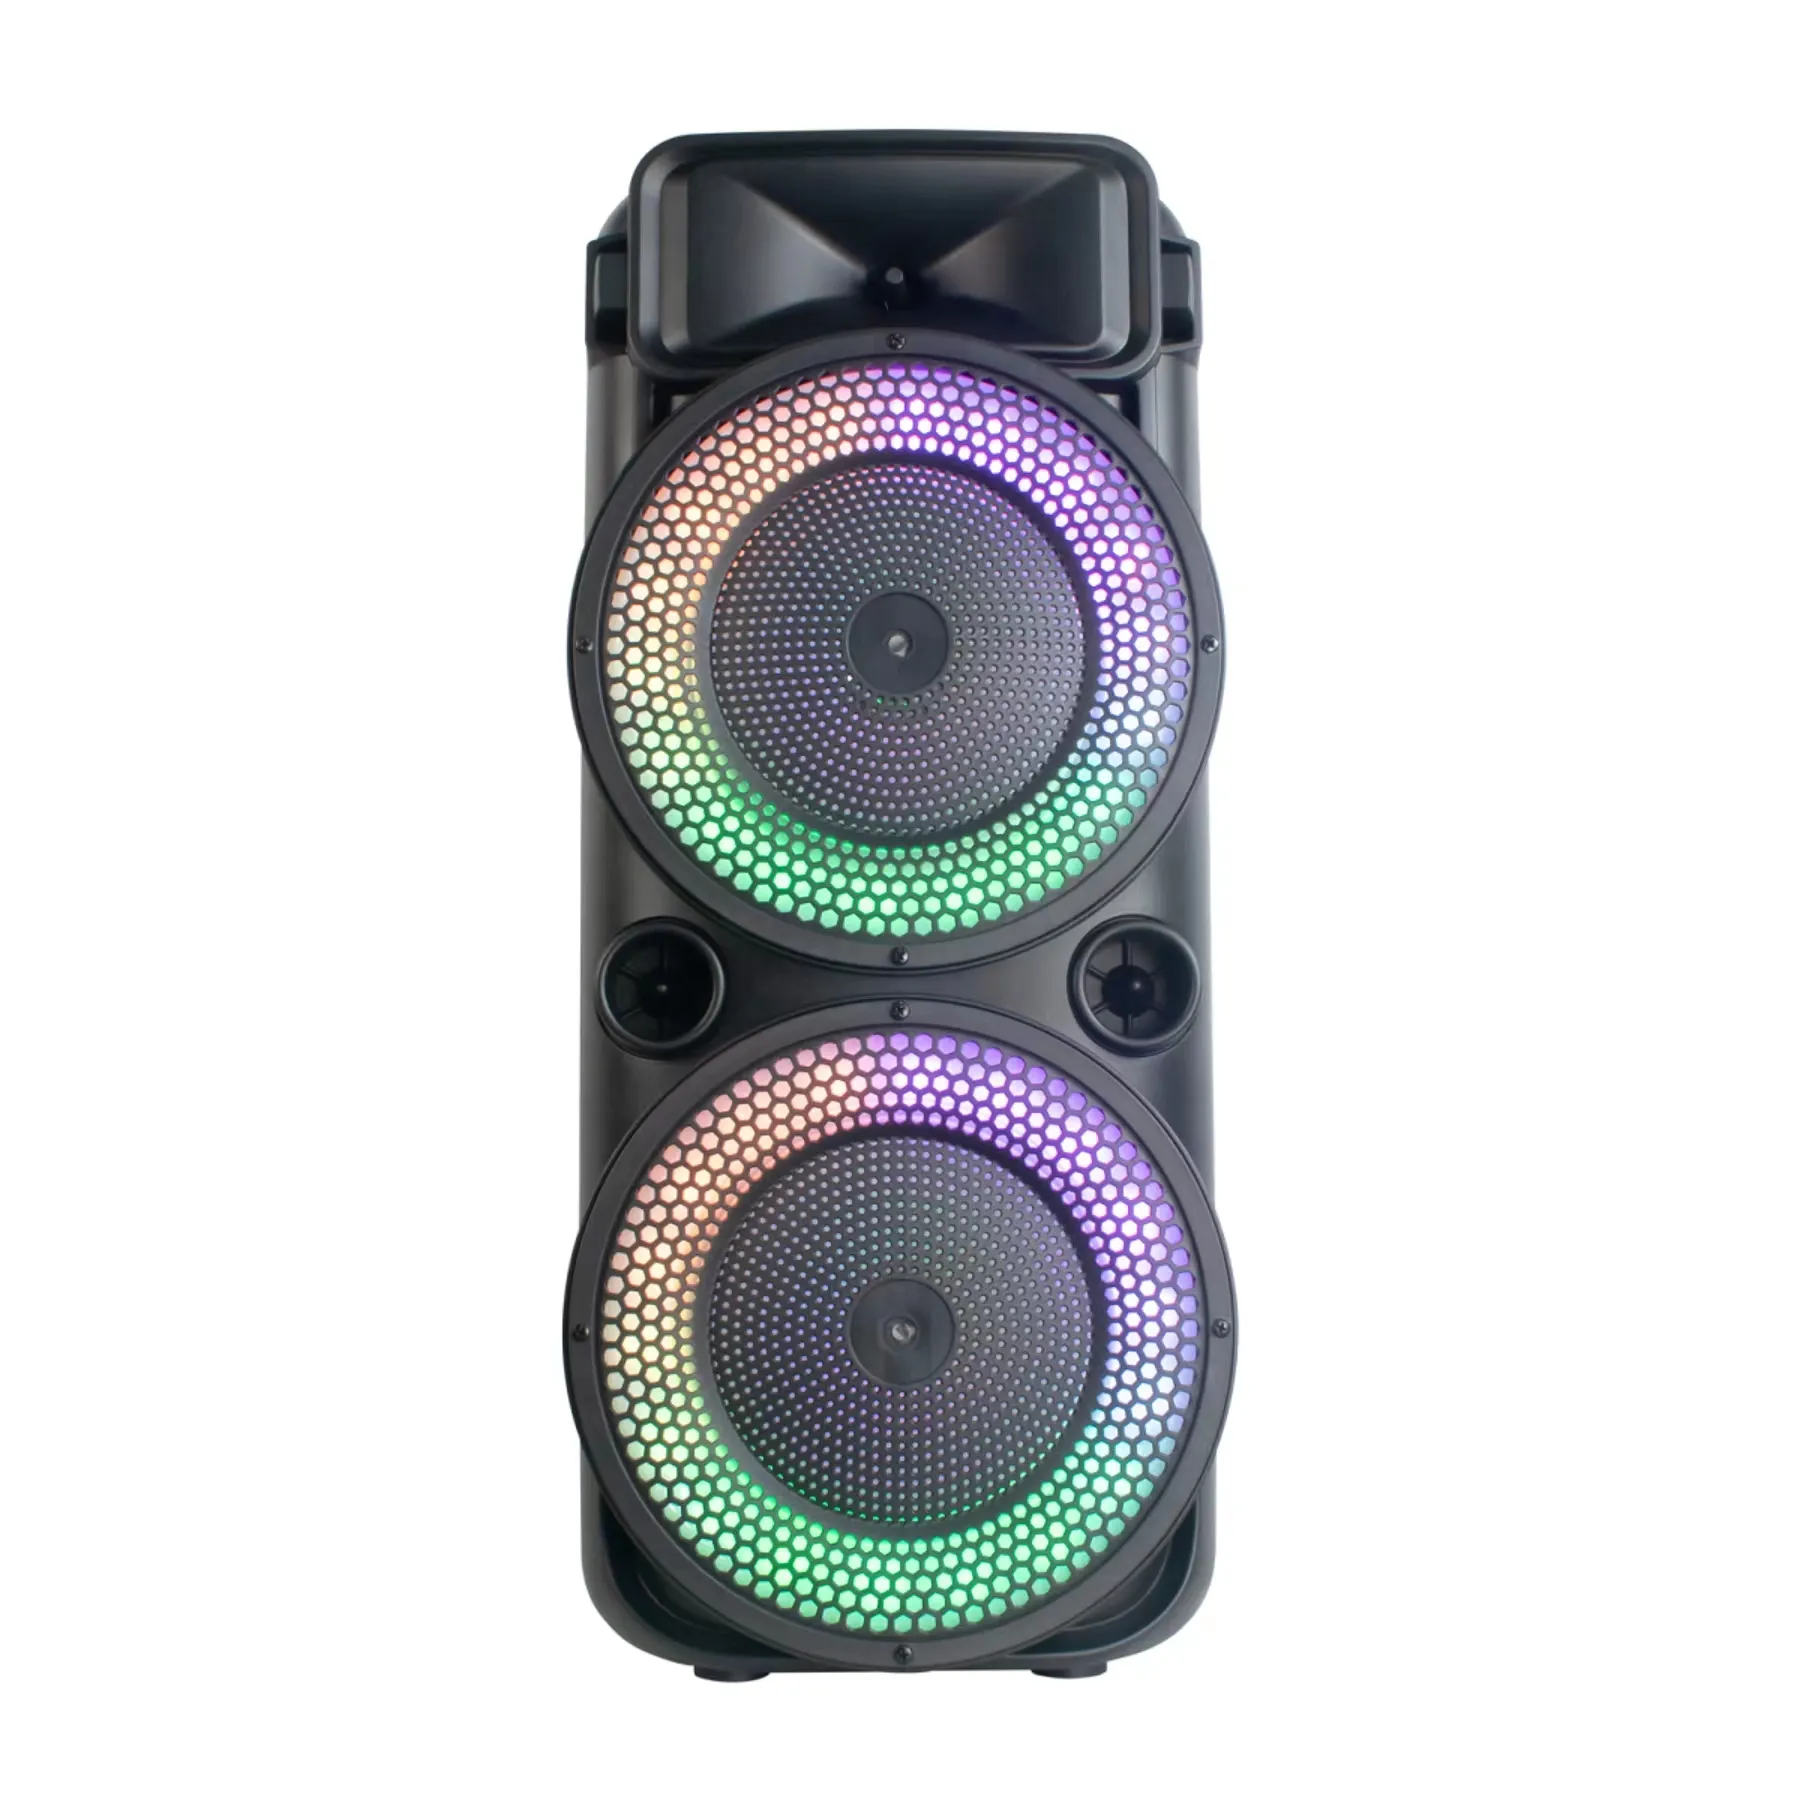 Thiết kế mới nhất Khuôn Đôi 8 inch cao Bass Battery Powered xách tay PA Đảng Hệ thống loa với ánh sáng LED và microphone